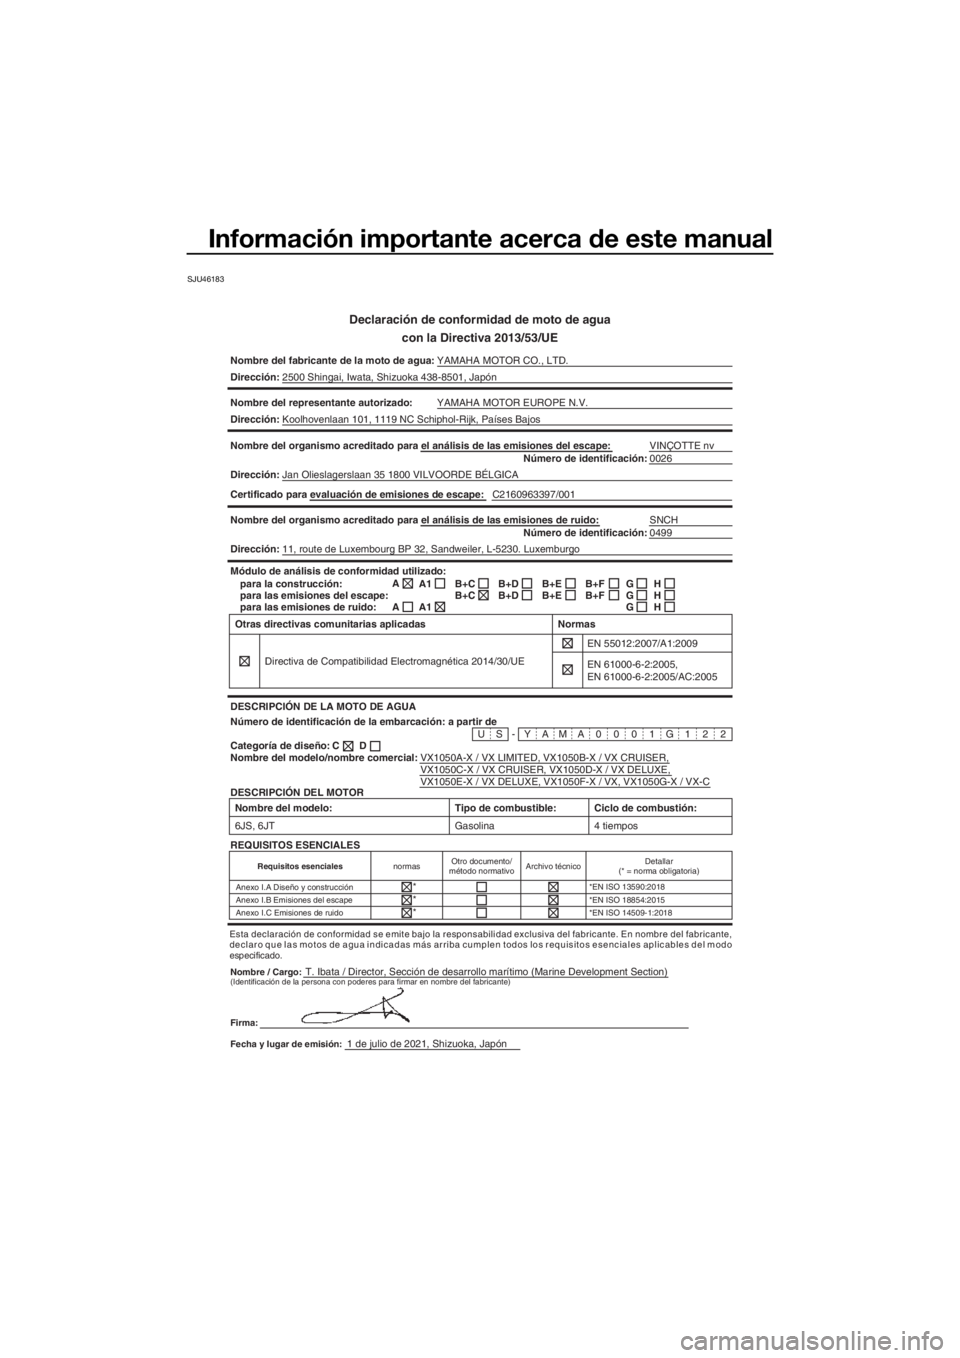 YAMAHA VX DELUXE 2022  Manuale de Empleo (in Spanish) Información importante acerca de este manual
SJU46183
Declaración de conformidad de moto de aguacon la Directiva 2013/53/UE
Nombre del fabricante de la moto de agua: YAMAHA MOTOR CO., LTD.
Direcció